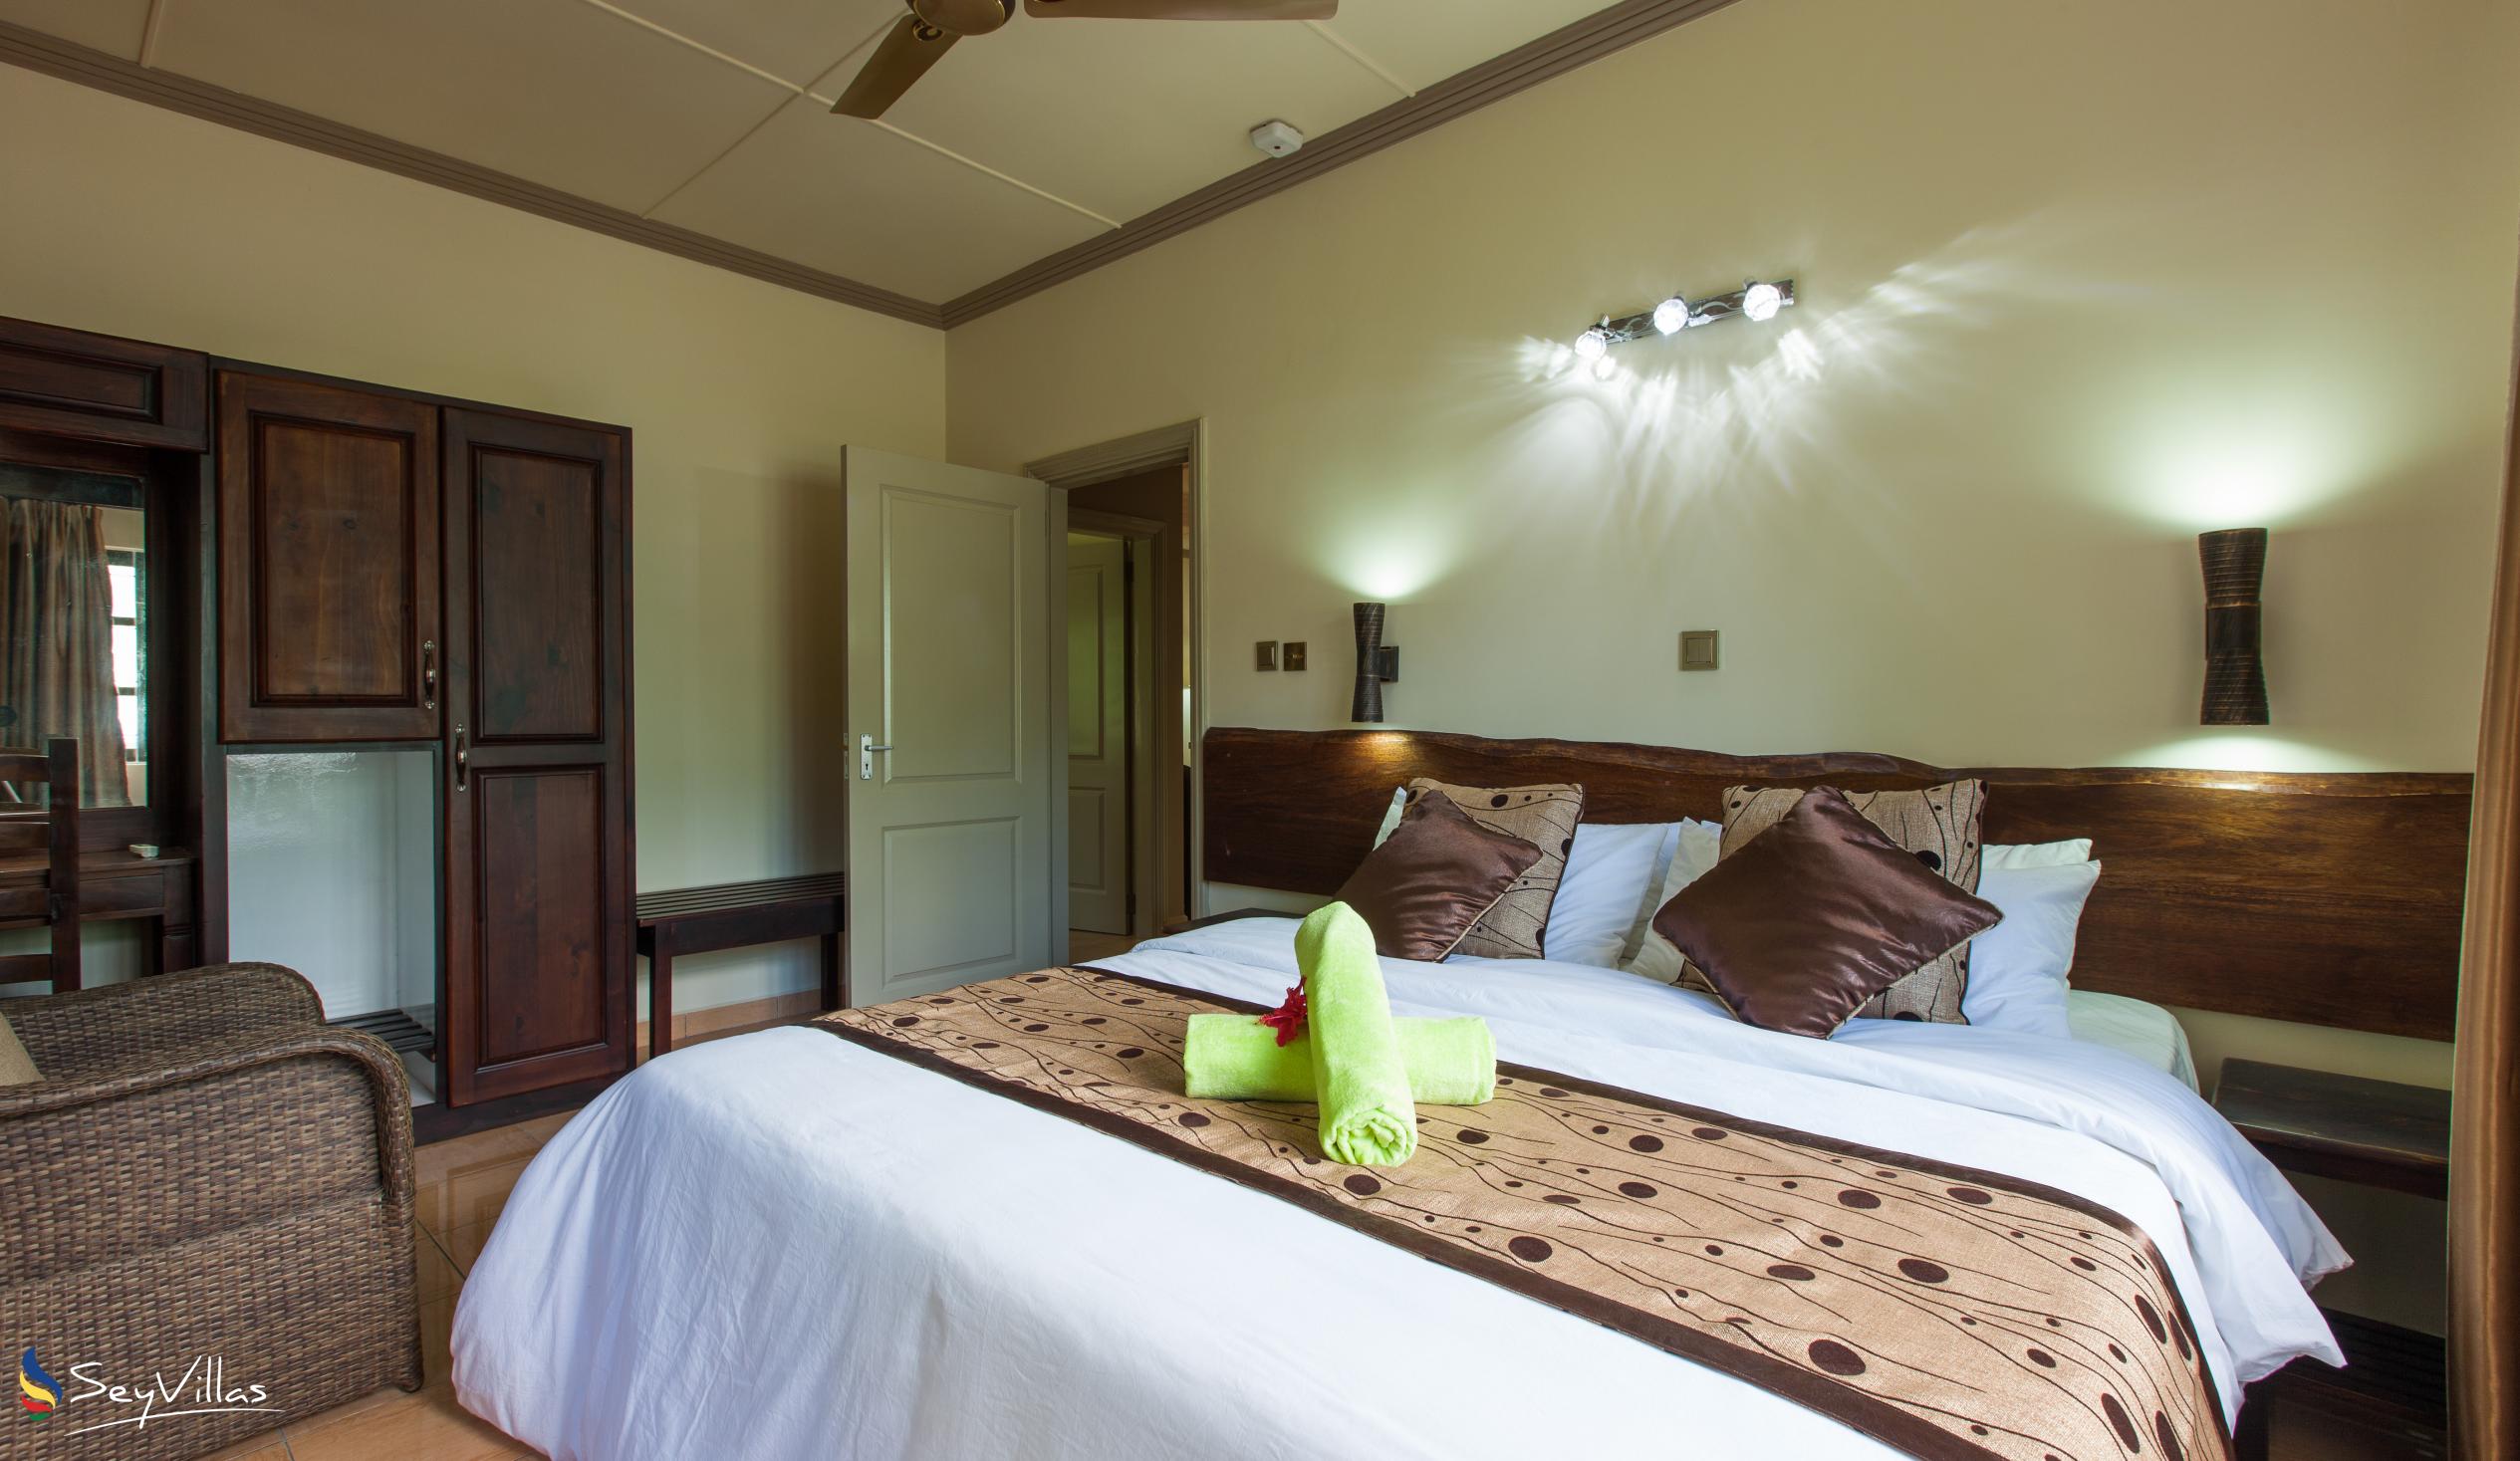 Foto 53: Chez Bea Villa - Appartamento con 2 camere - Praslin (Seychelles)